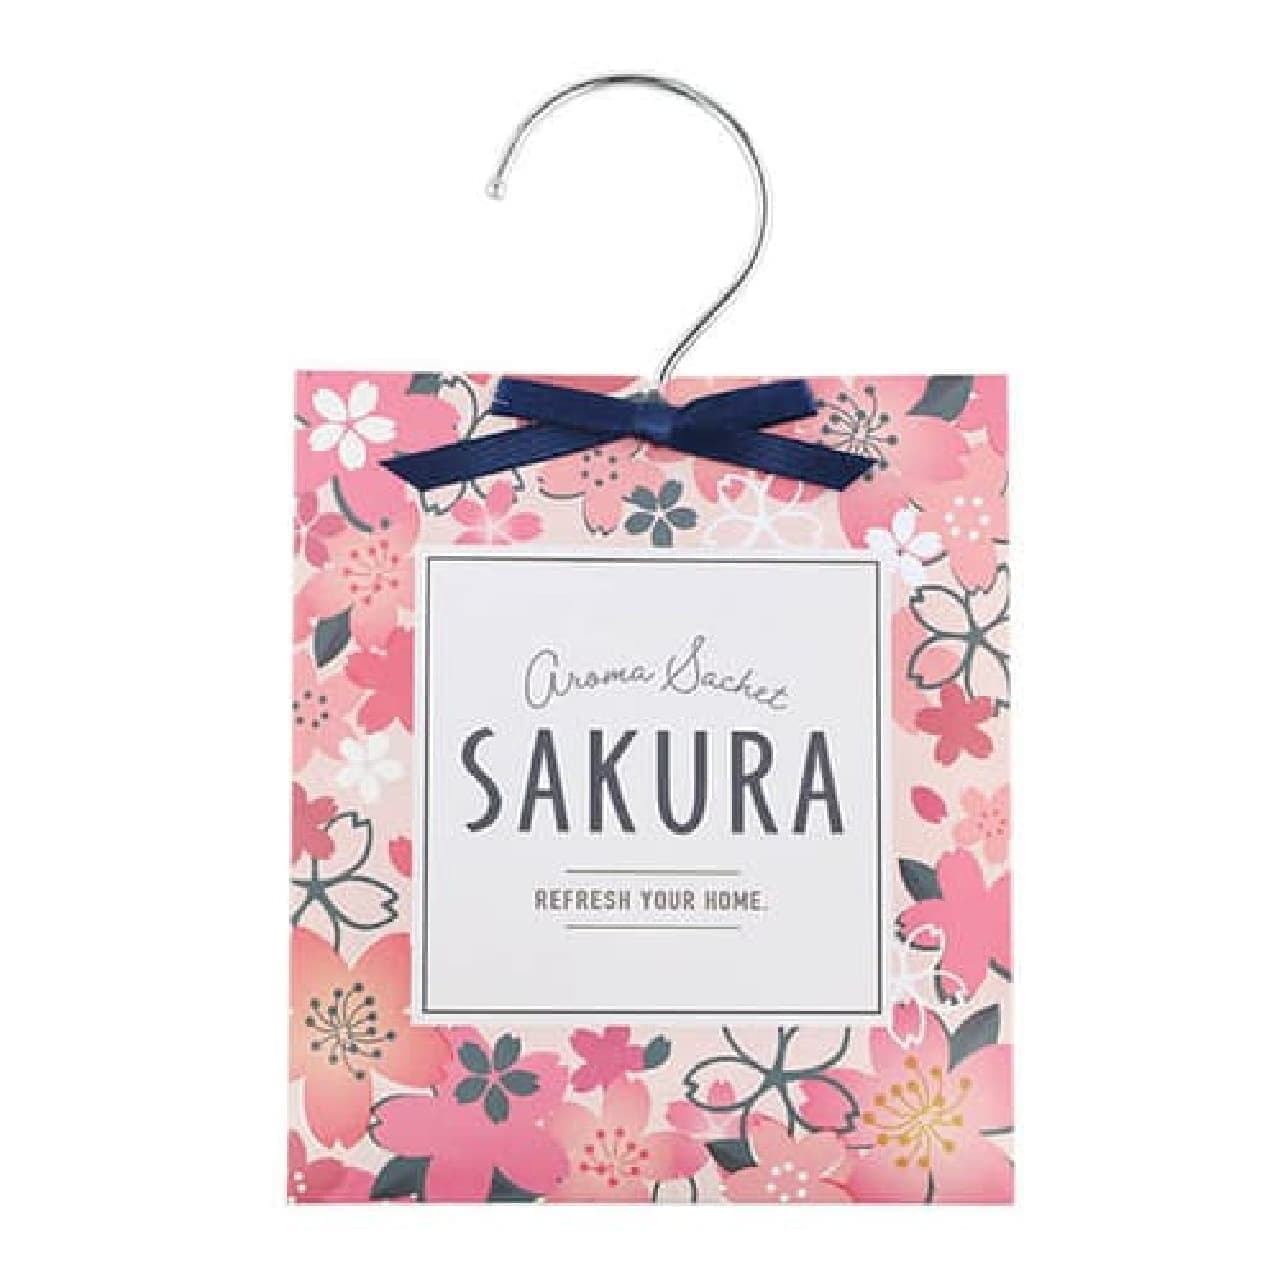 AWESOME STORE Hinamatsuri & Sakura Goods